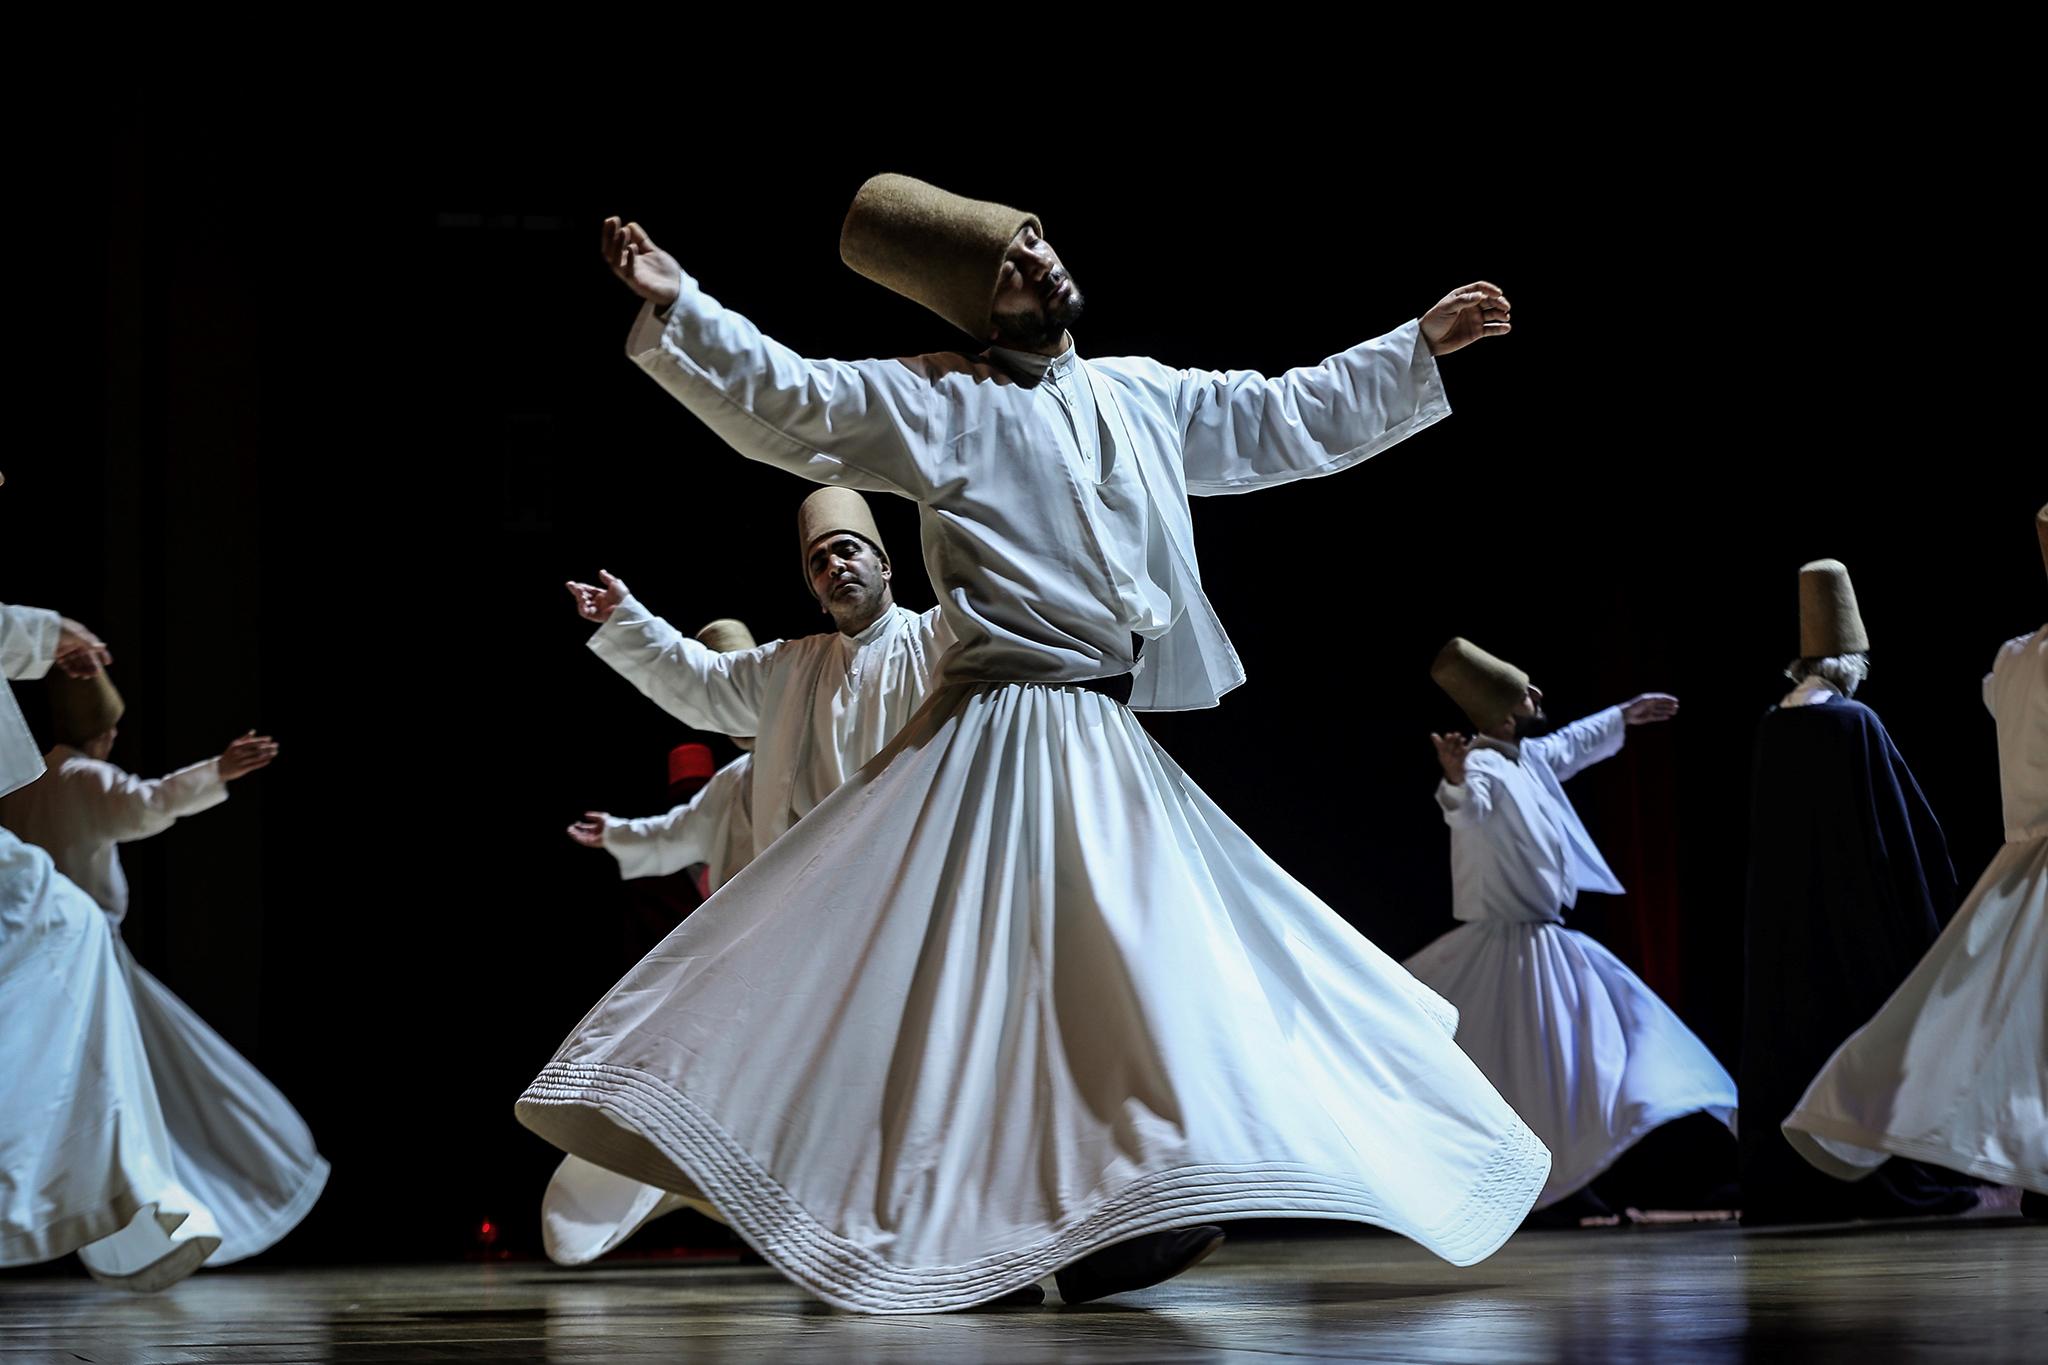 Суфийская музыка. Танец суфиев дервишей. Мевлеви дервишей (Турция). Турция танец дервишей. Кружение суфийских дервишей, Турция.